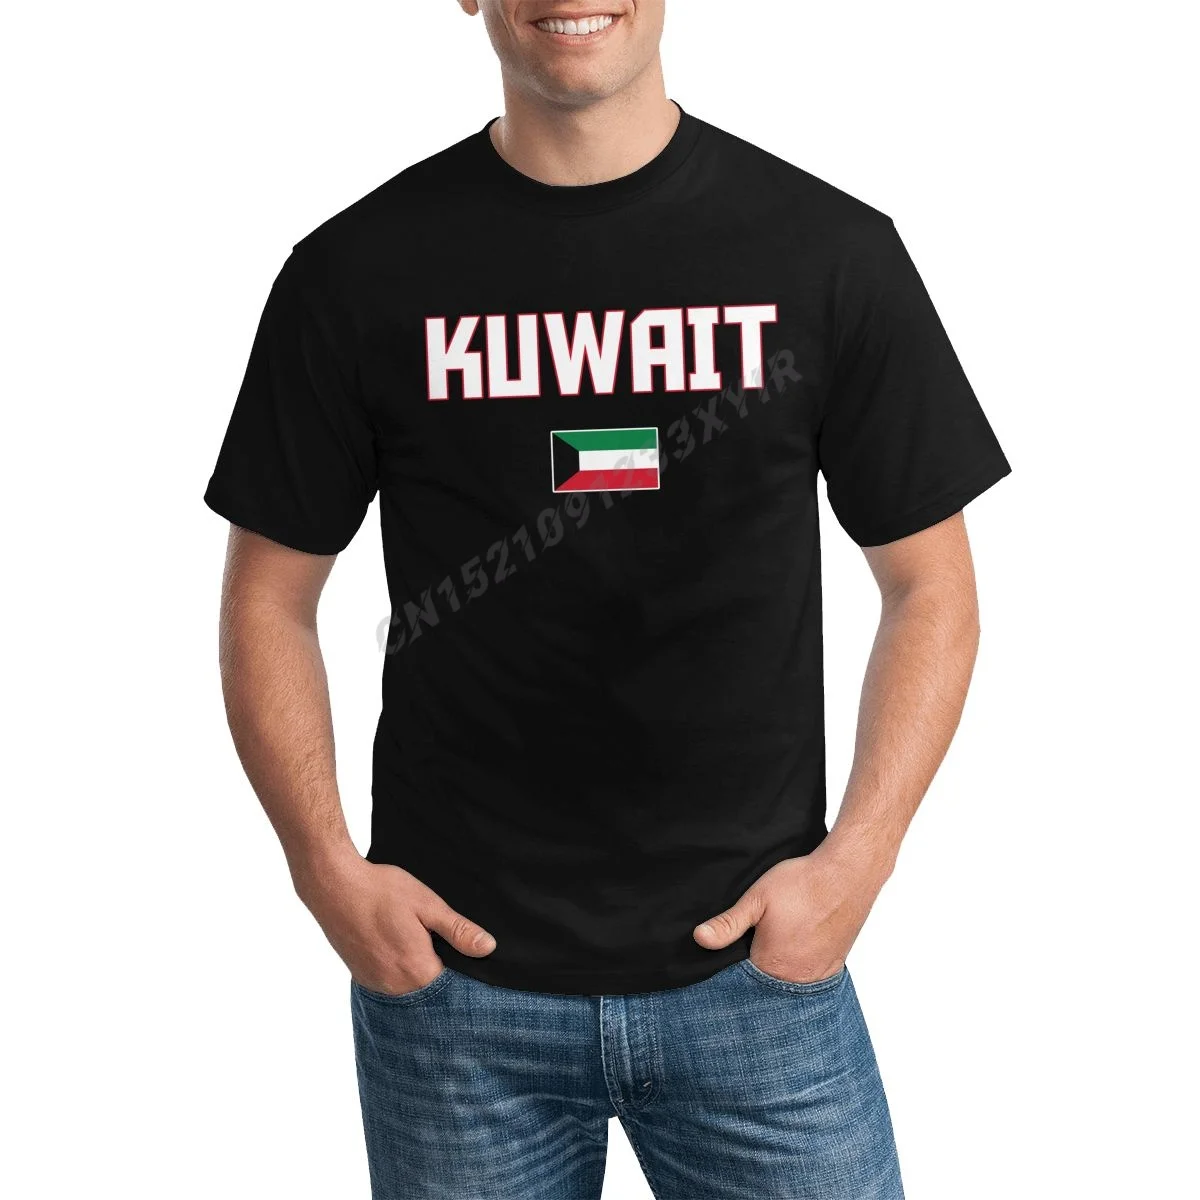 

Мужская футболка с принтом флага Кувейта, крутая футболка Kuwaitis, Мужская футболка из 100% хлопка, яркая футболка с круглым вырезом, модная футб...